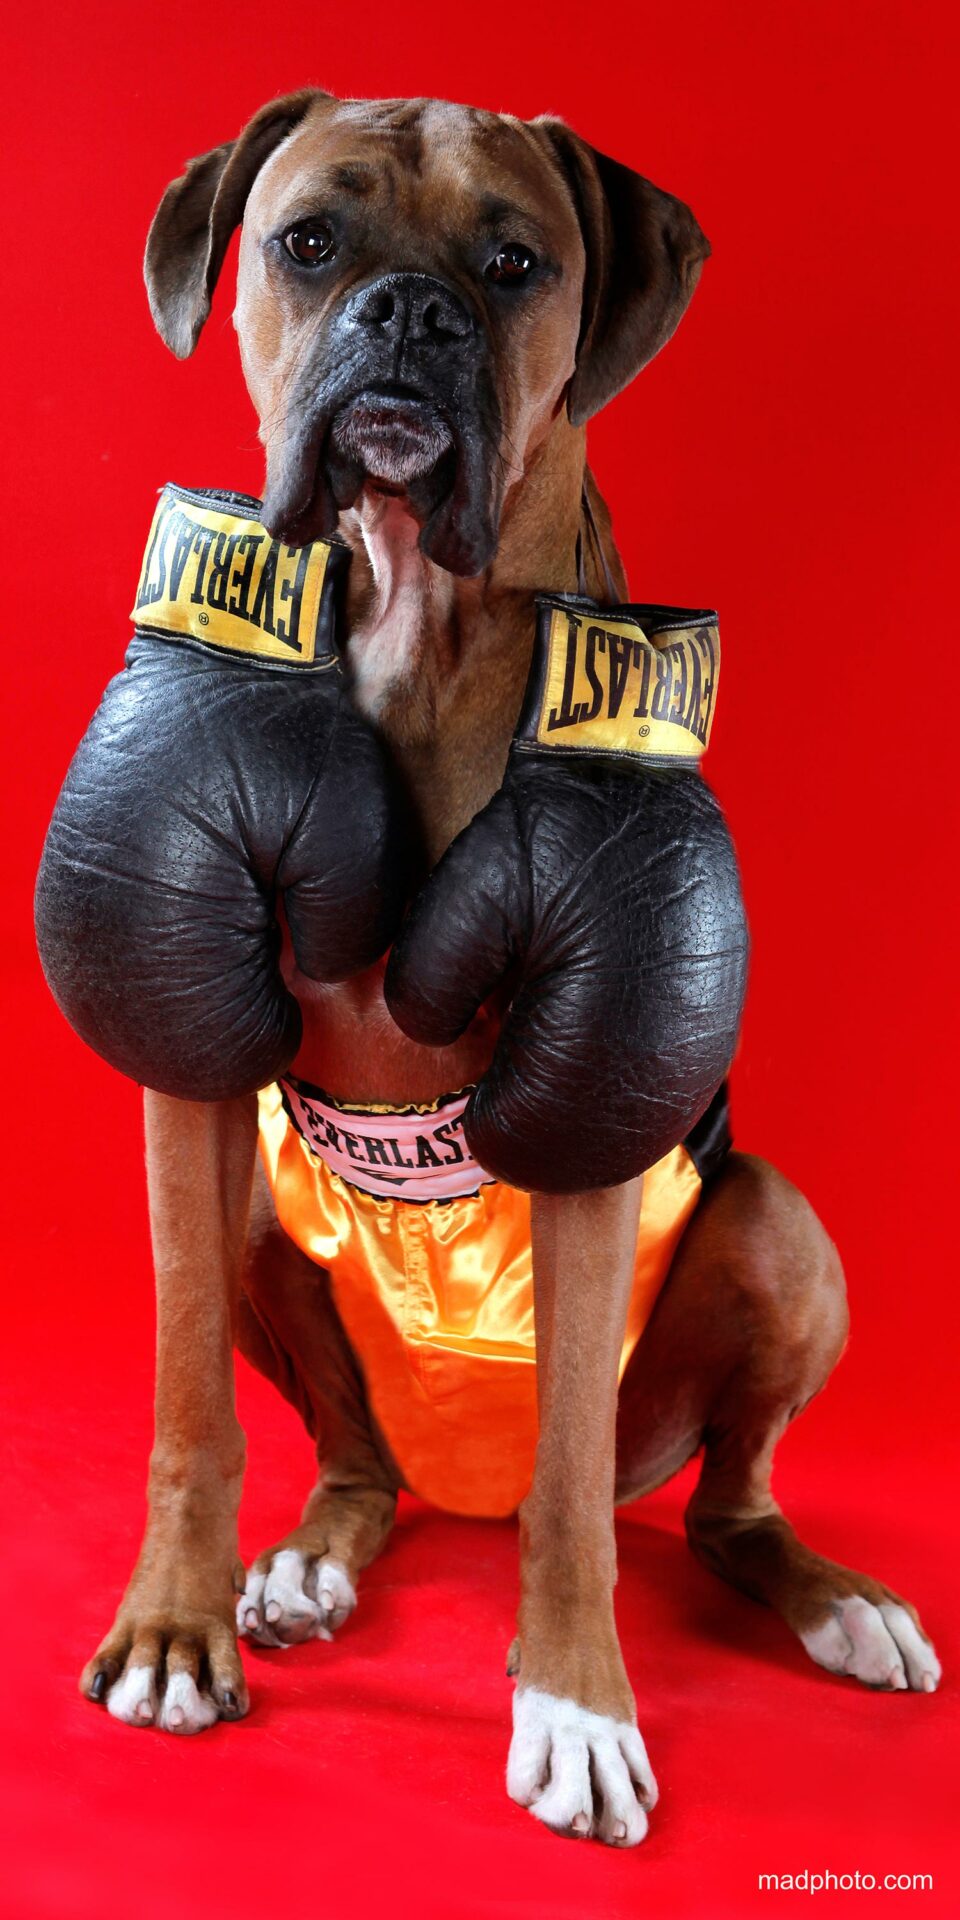 Boxer dog wearing boxing gloves.